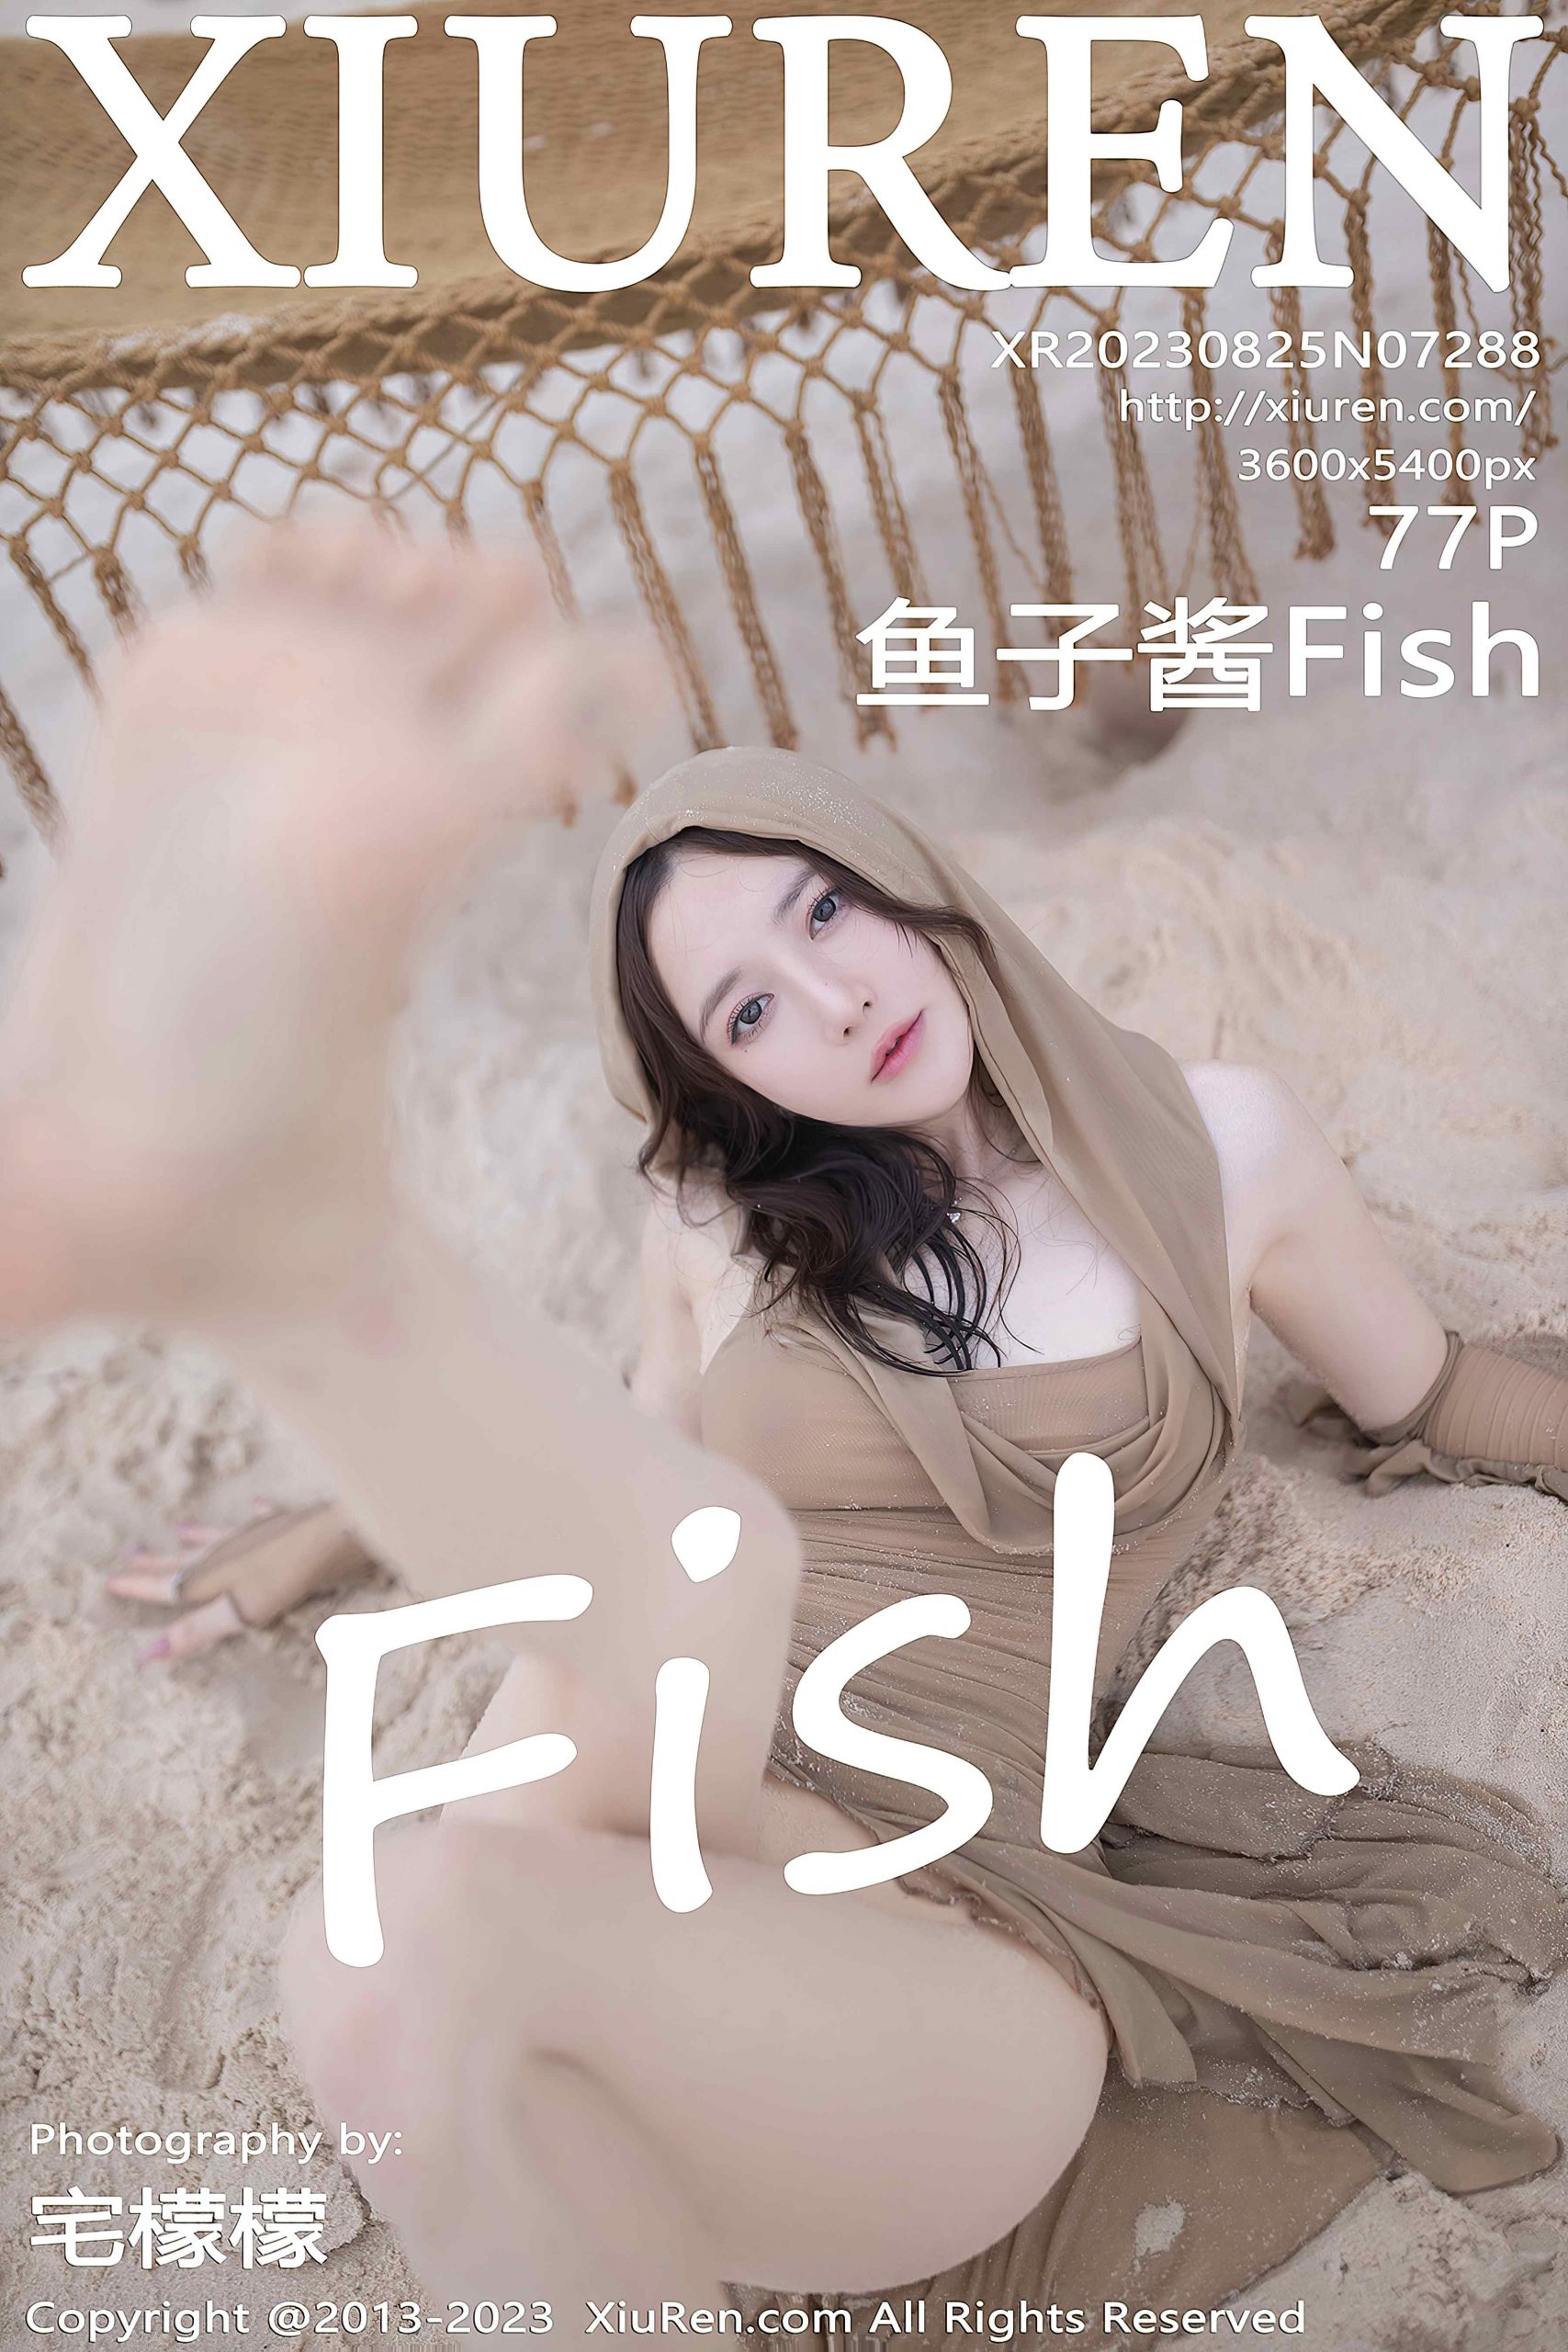 [XiuRen秀人网] 2023.08.25 No.7288 鱼子酱Fish 沙滩美腿[77P/773M]